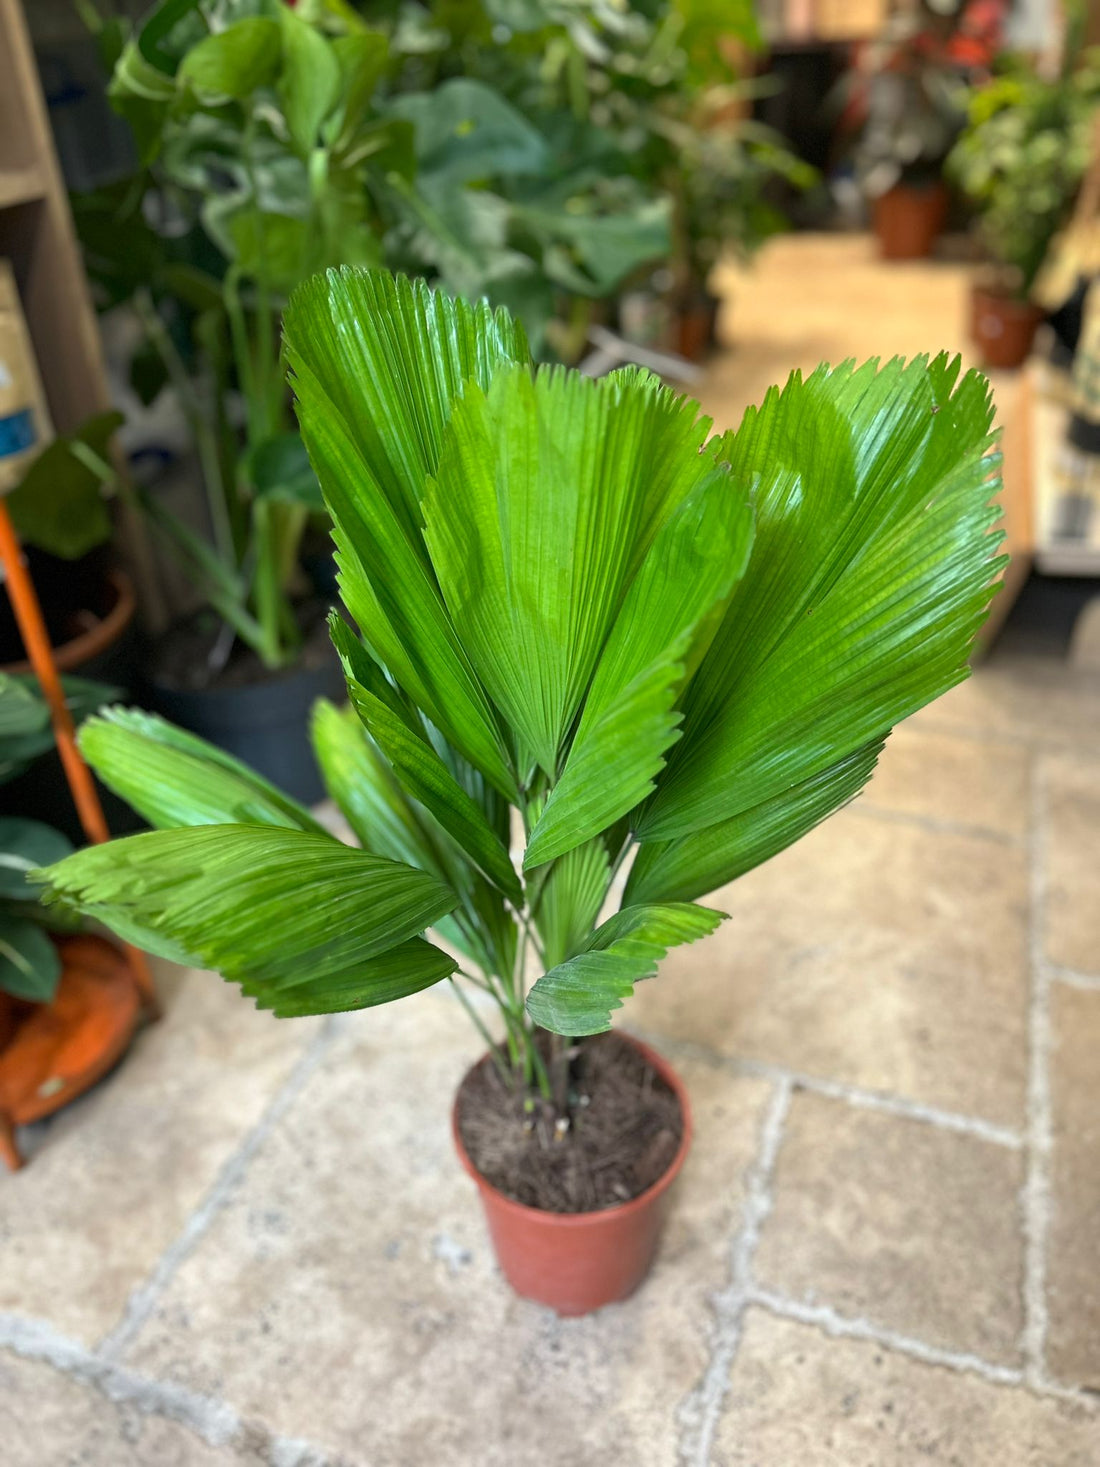 Licuala grandis (Ruffled fan palm)